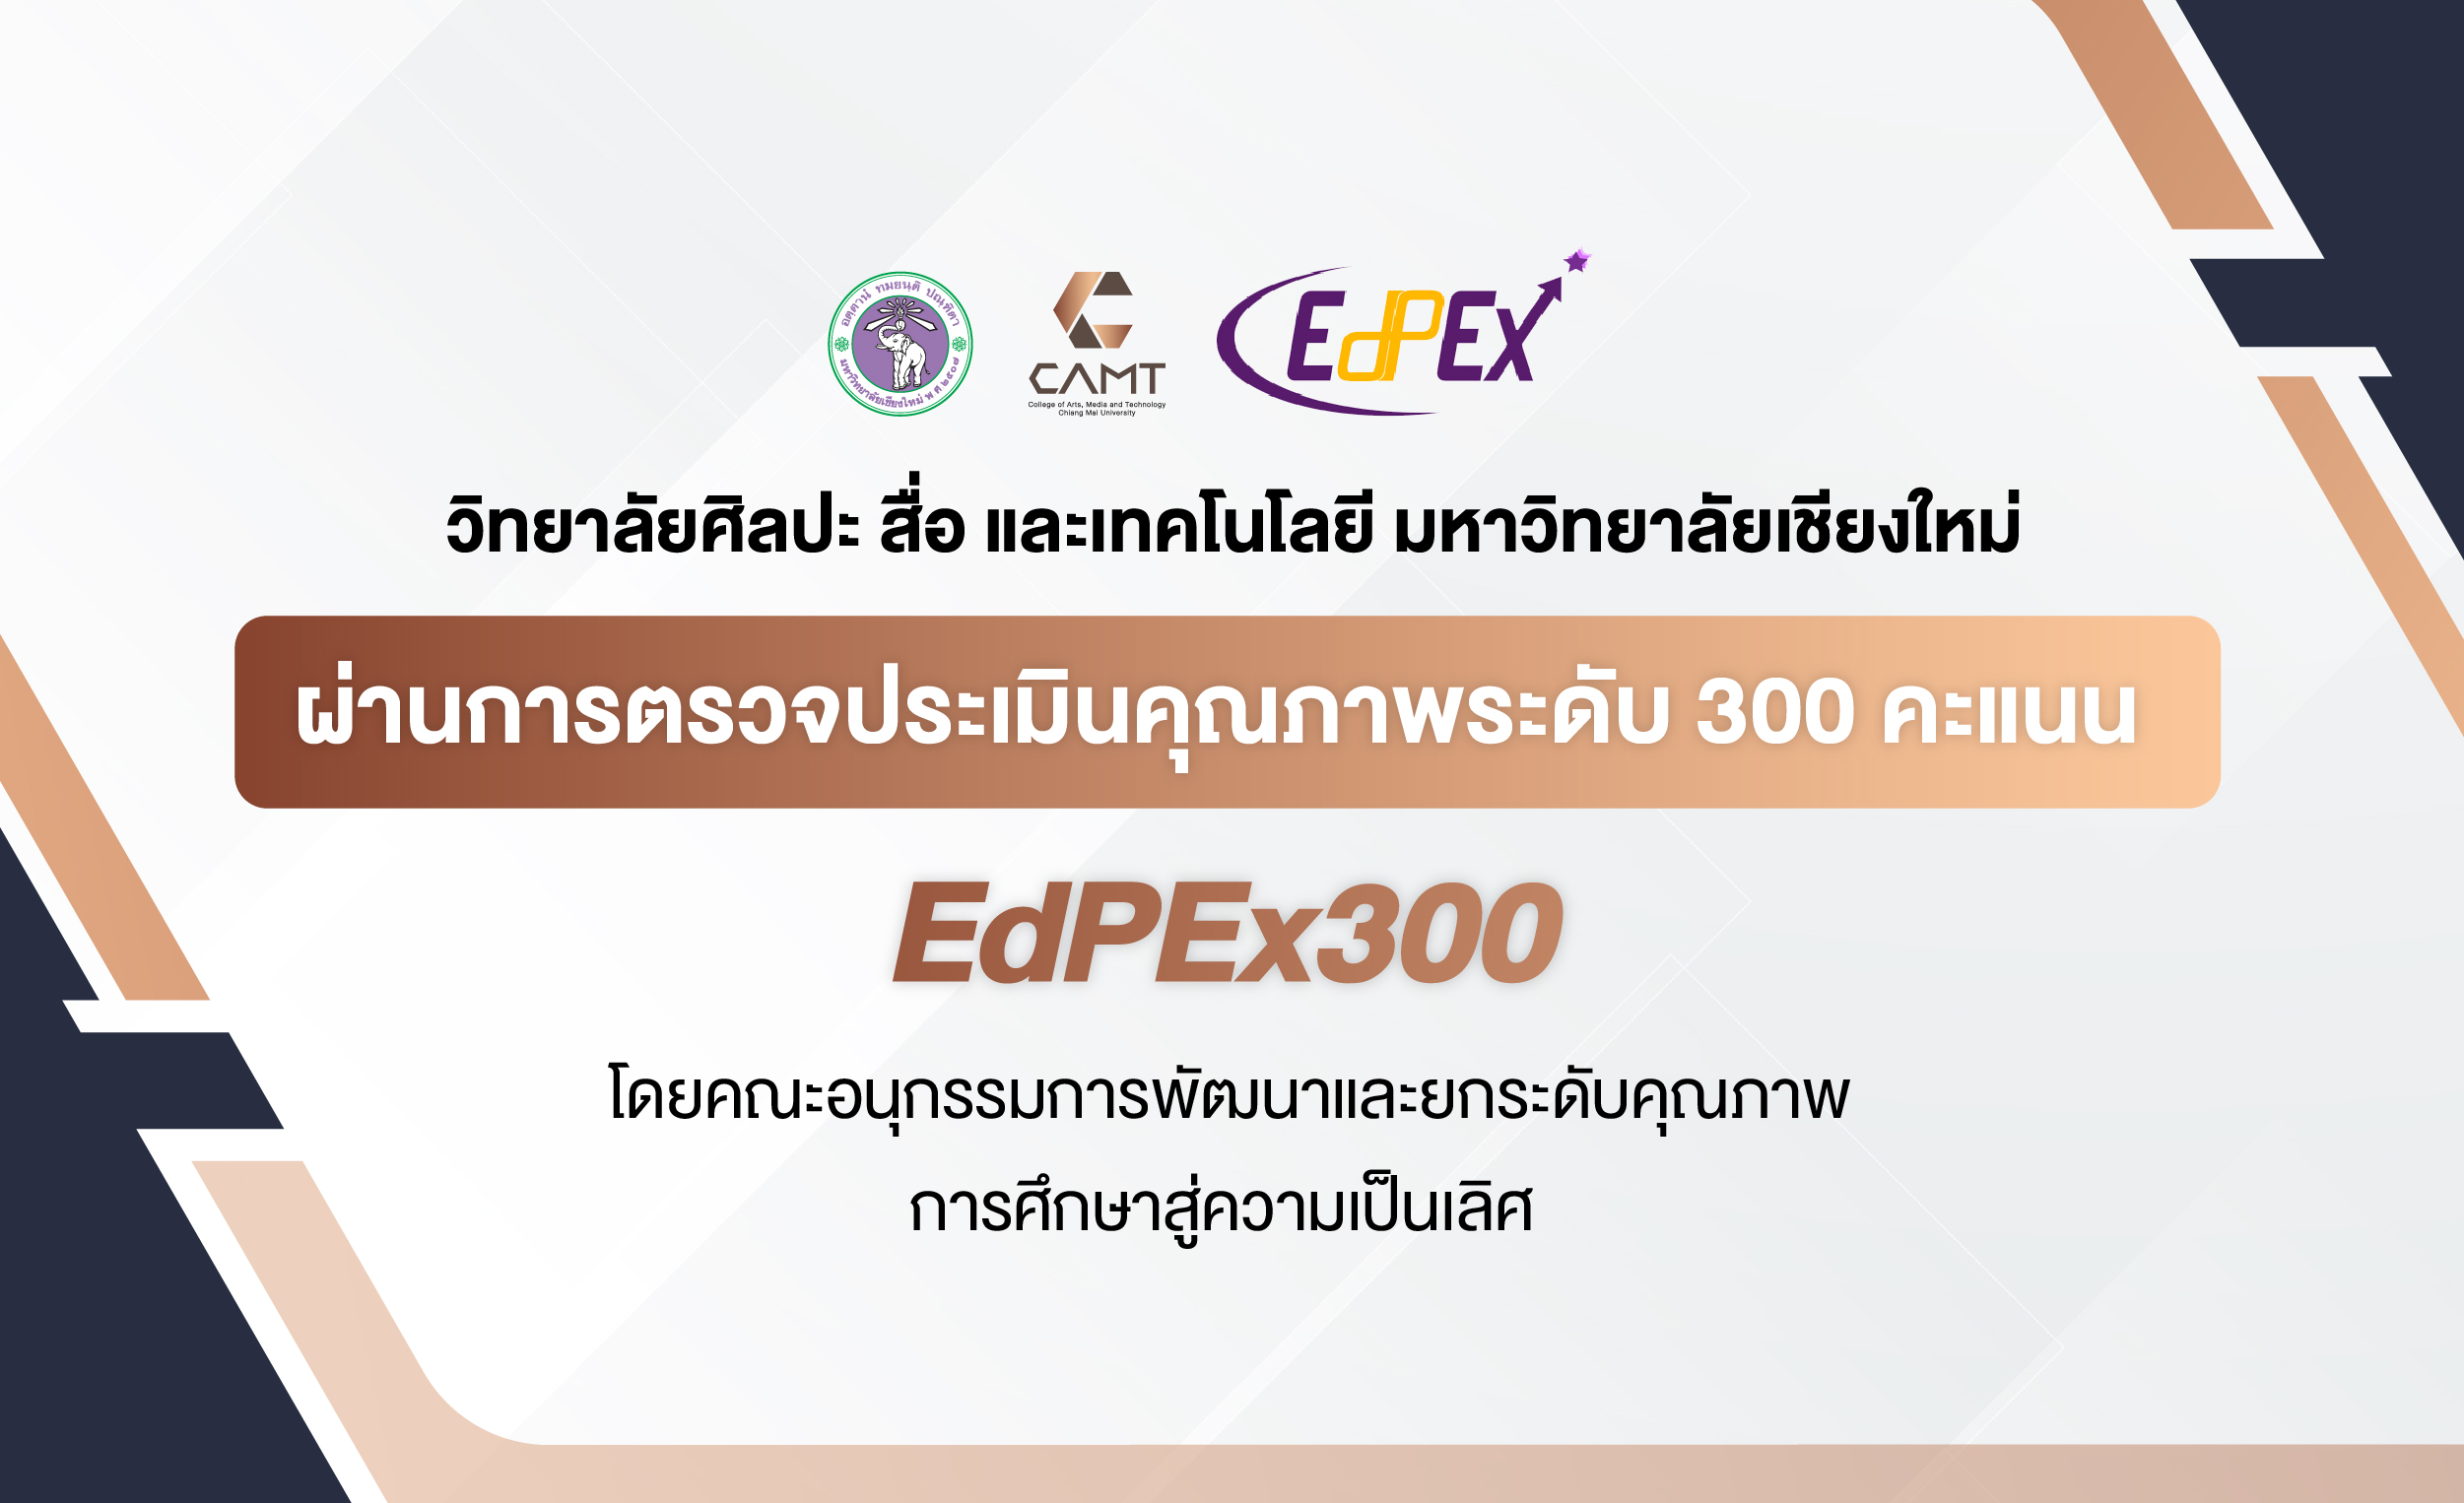 edpex300